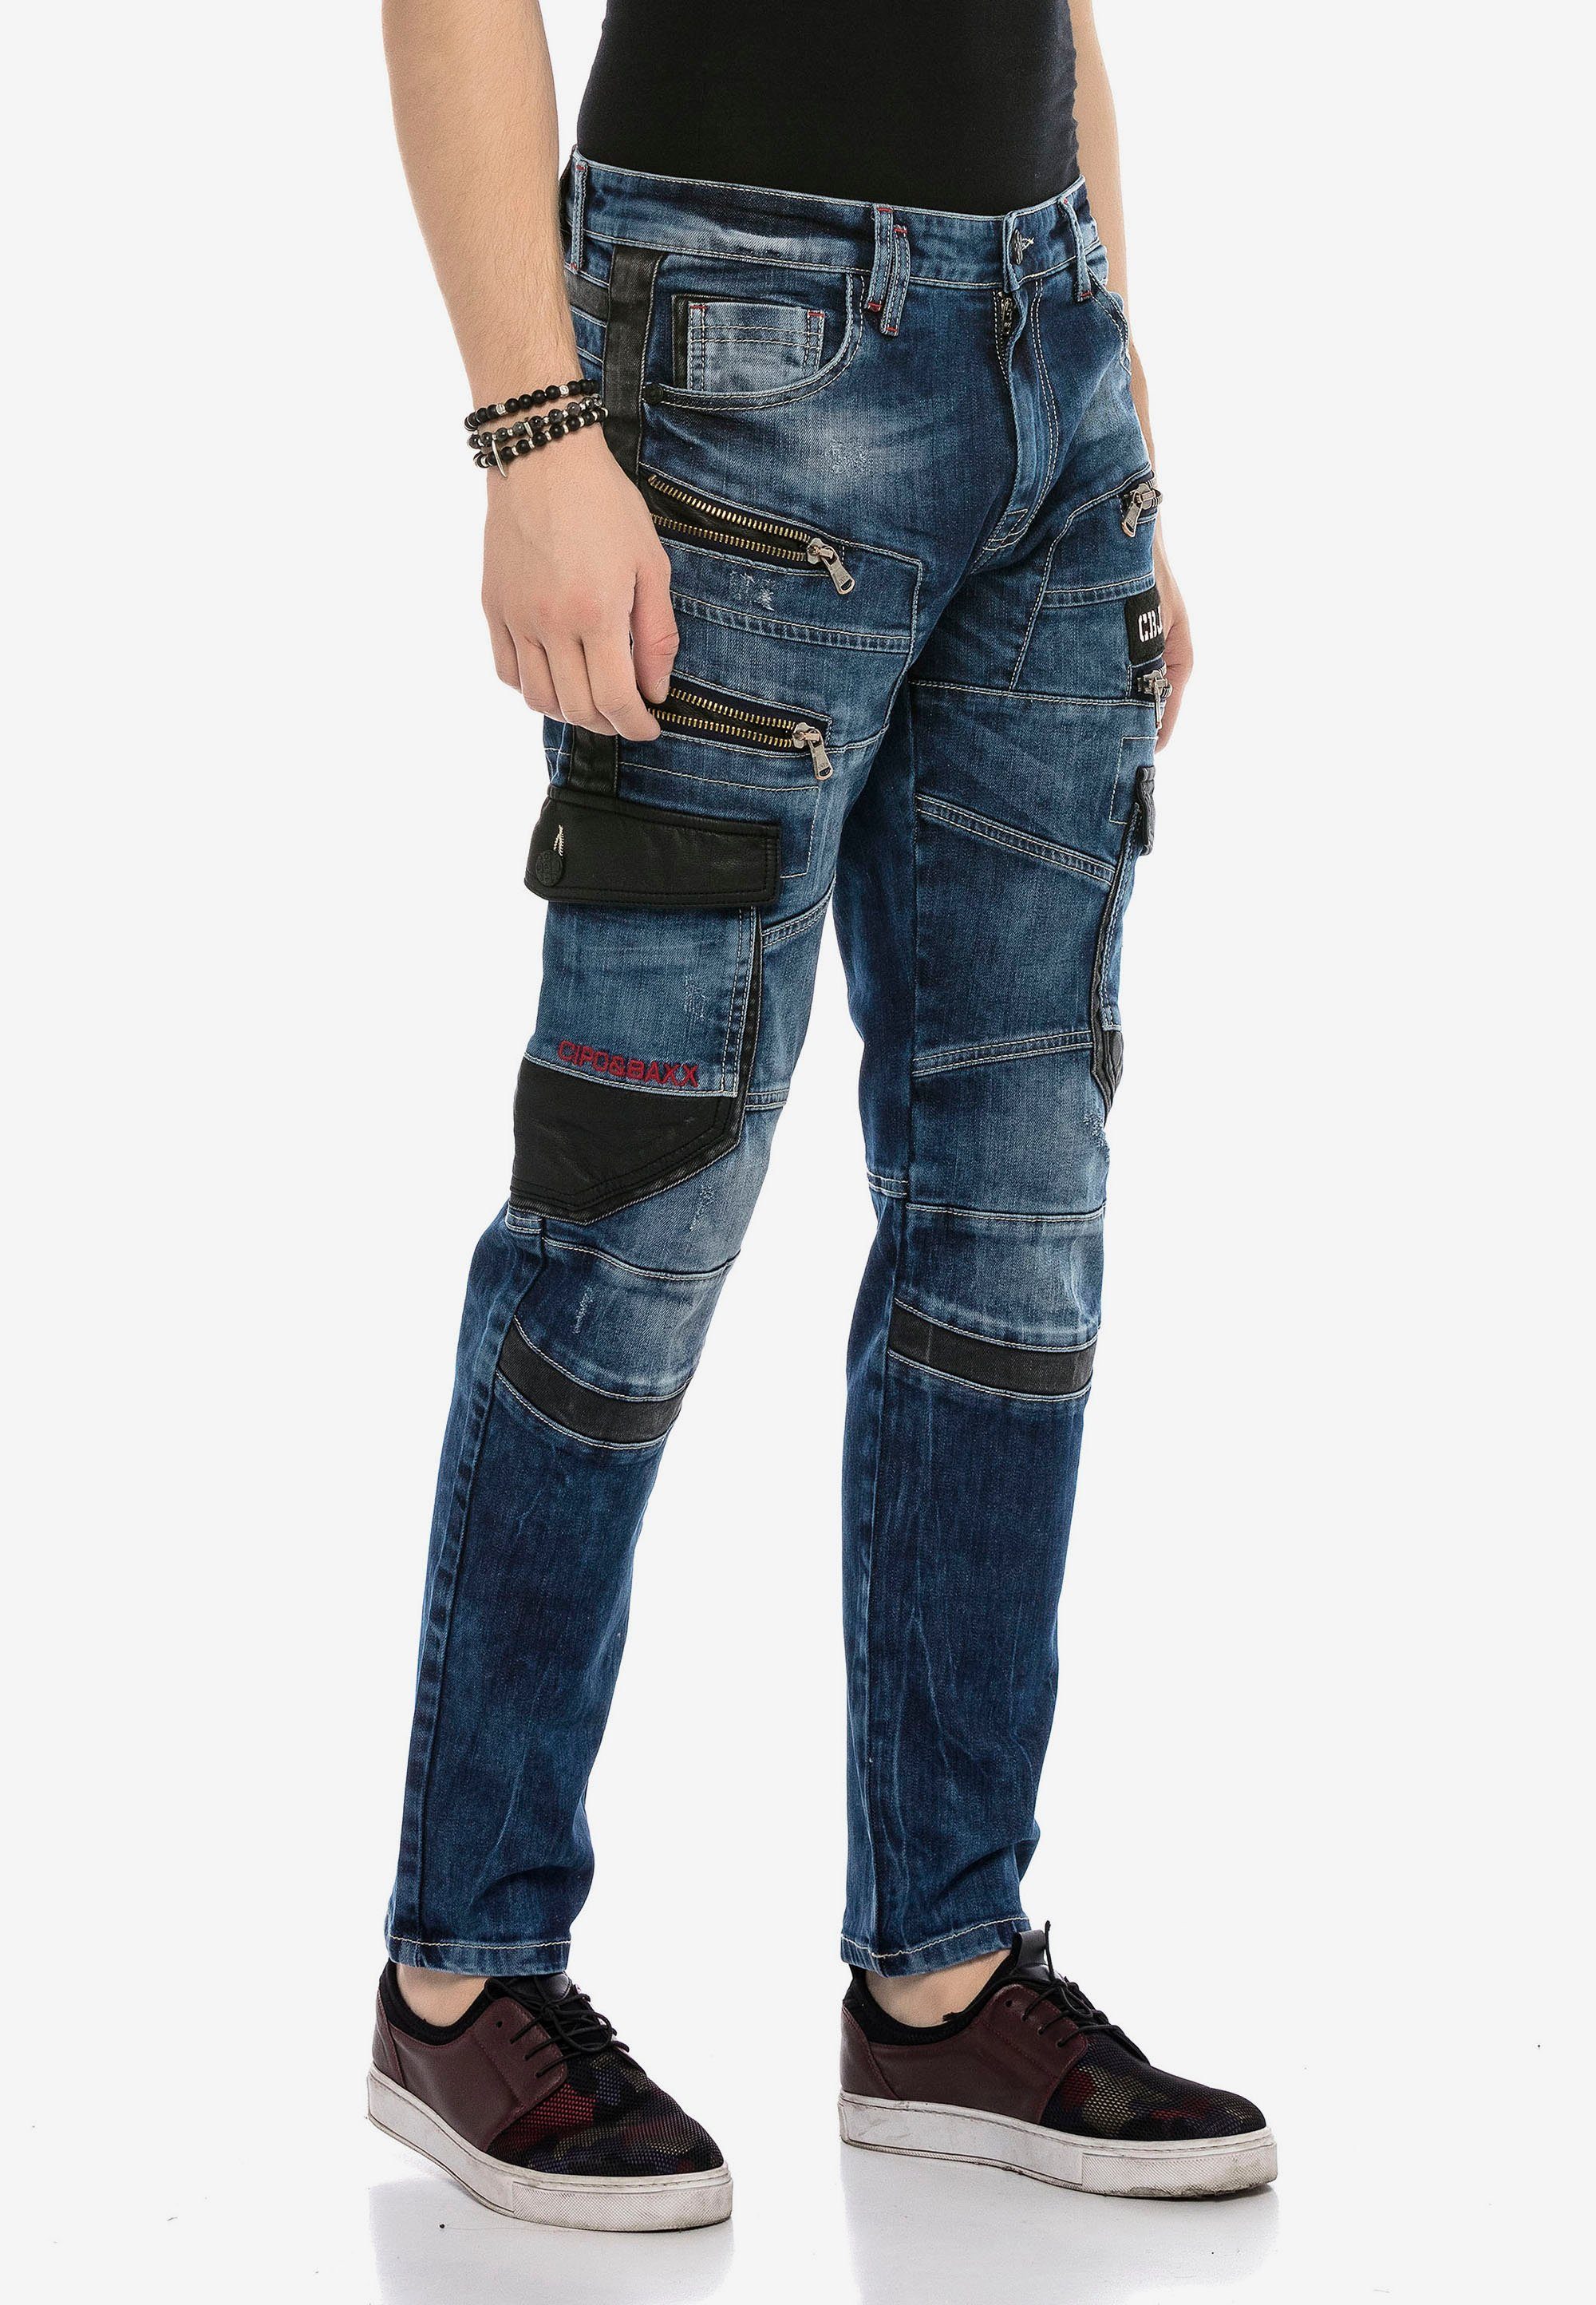 Baxx mit Bequeme & Cipo auffälligen Jeans Applikationen